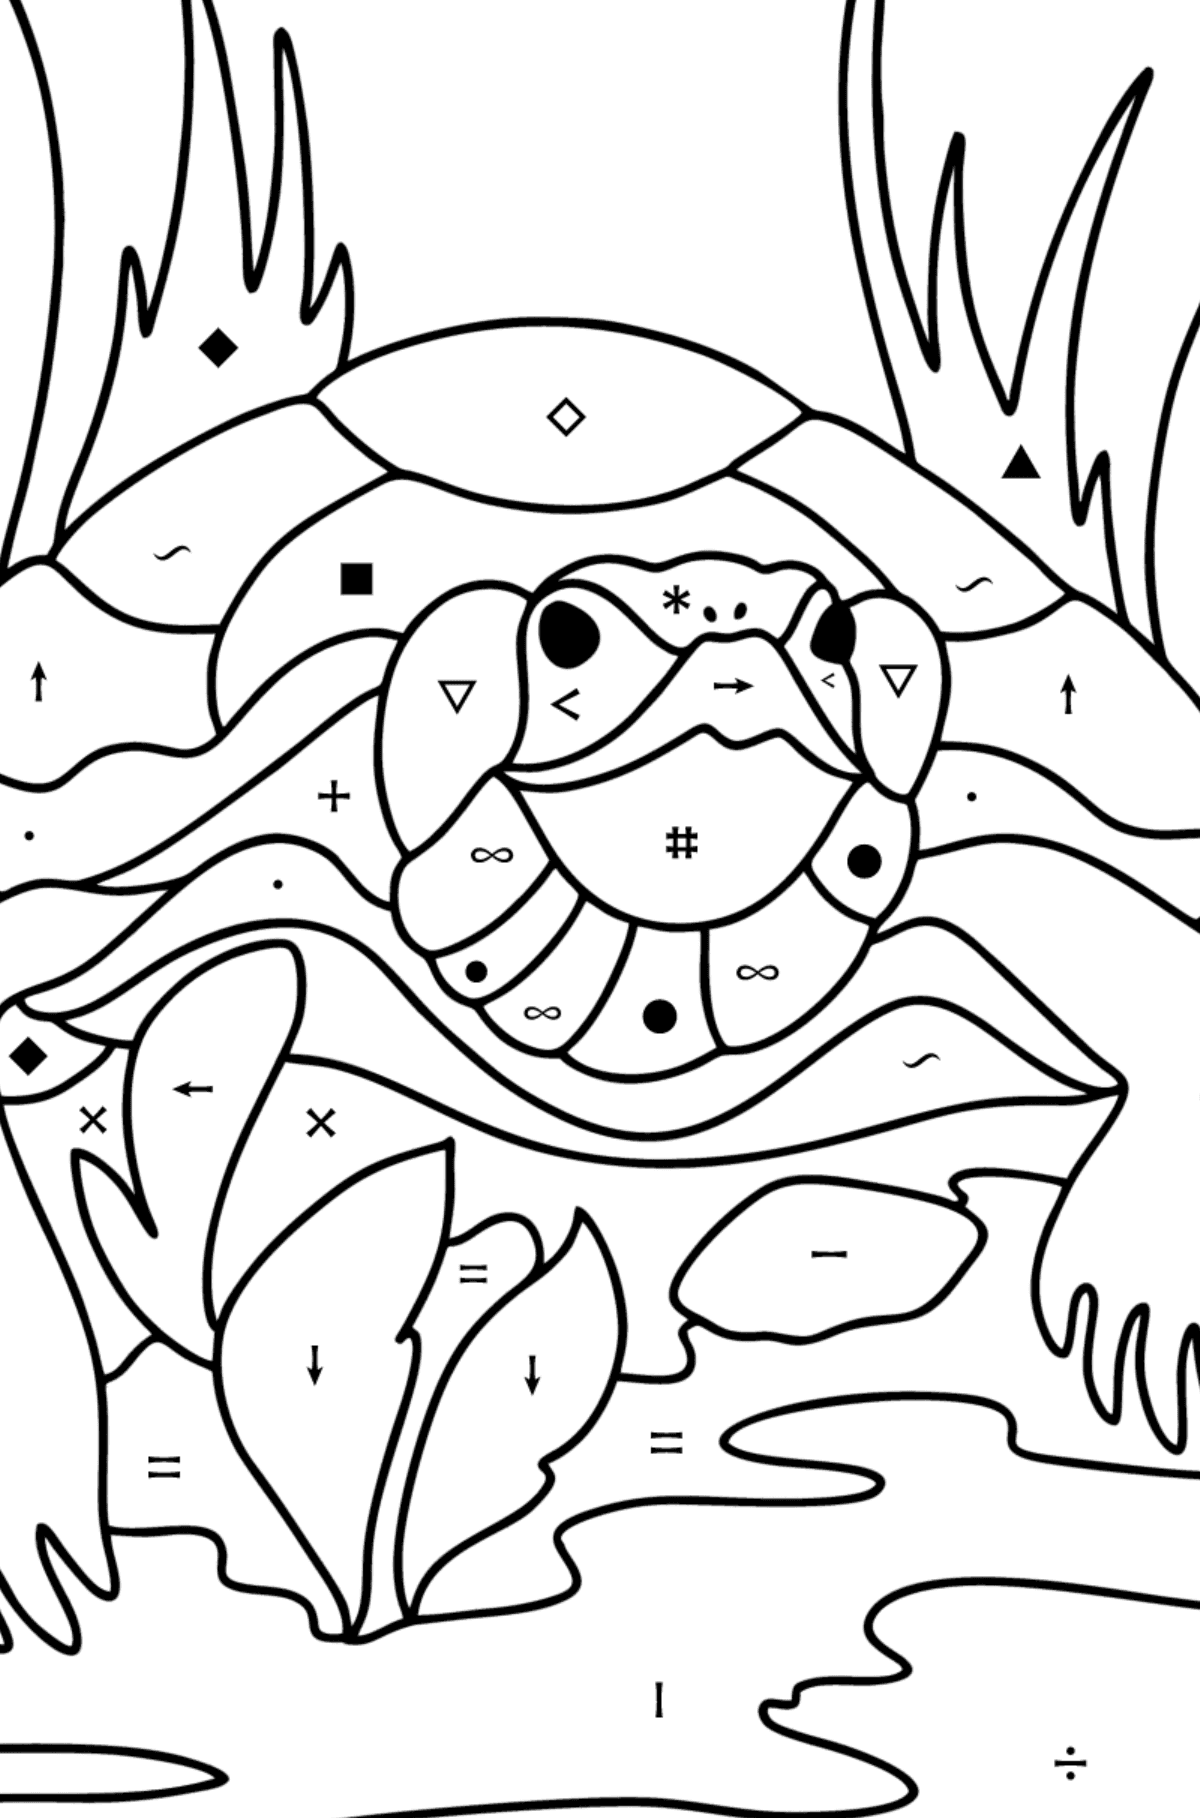 Disegno da colorare Tartaruga - Colorare per simboli per bambini